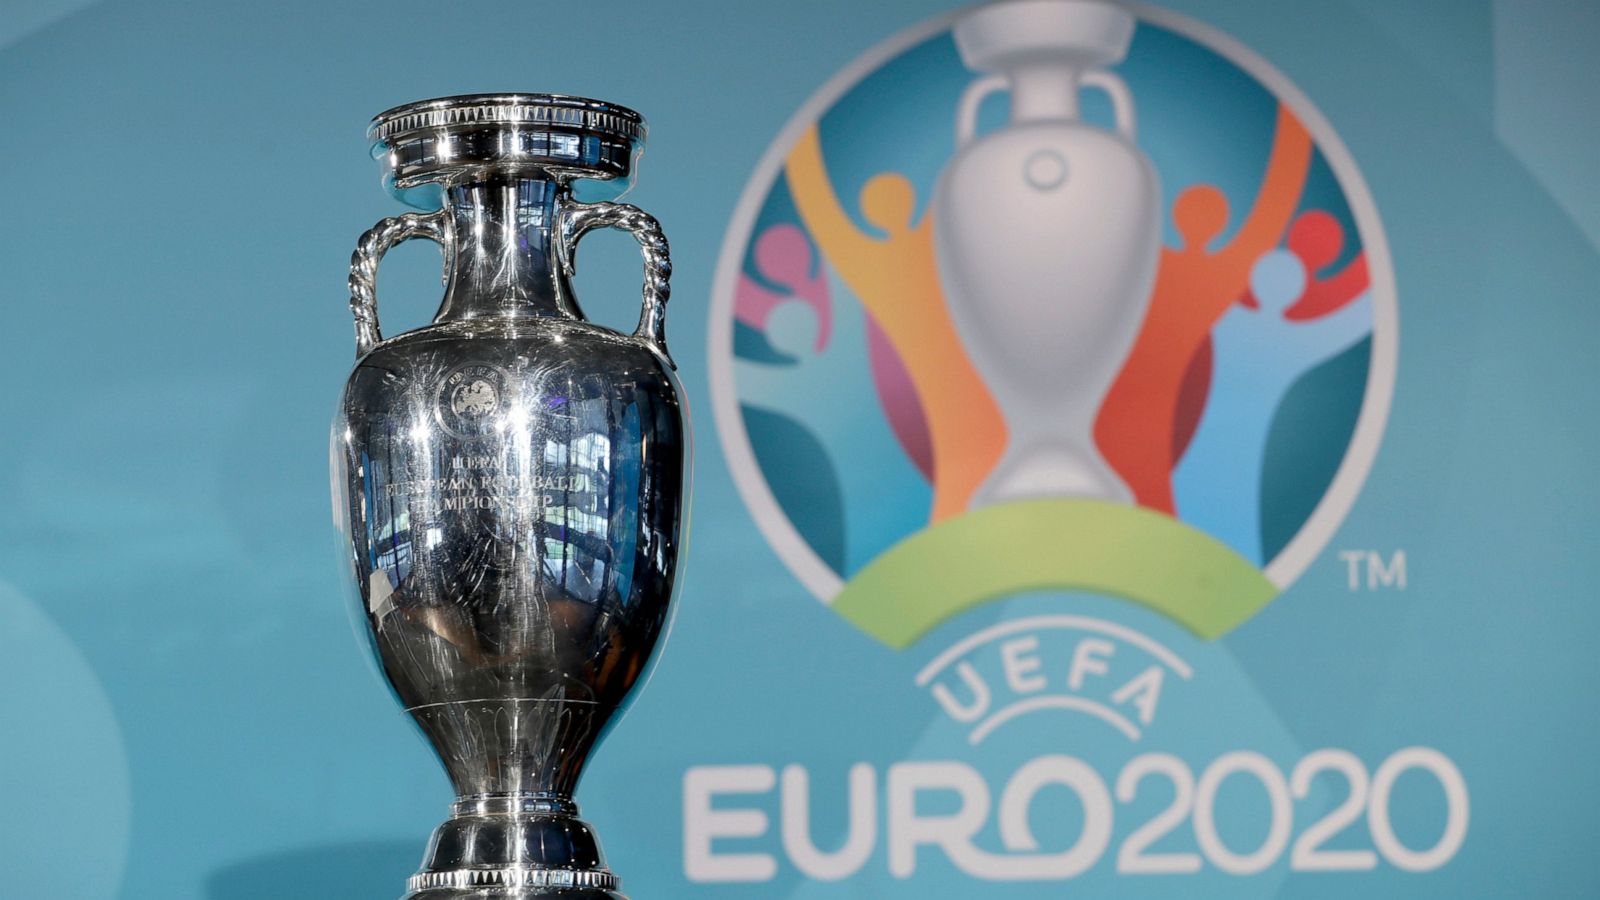 UEFA postpones Euro 2020 by 1 year because of pandemic